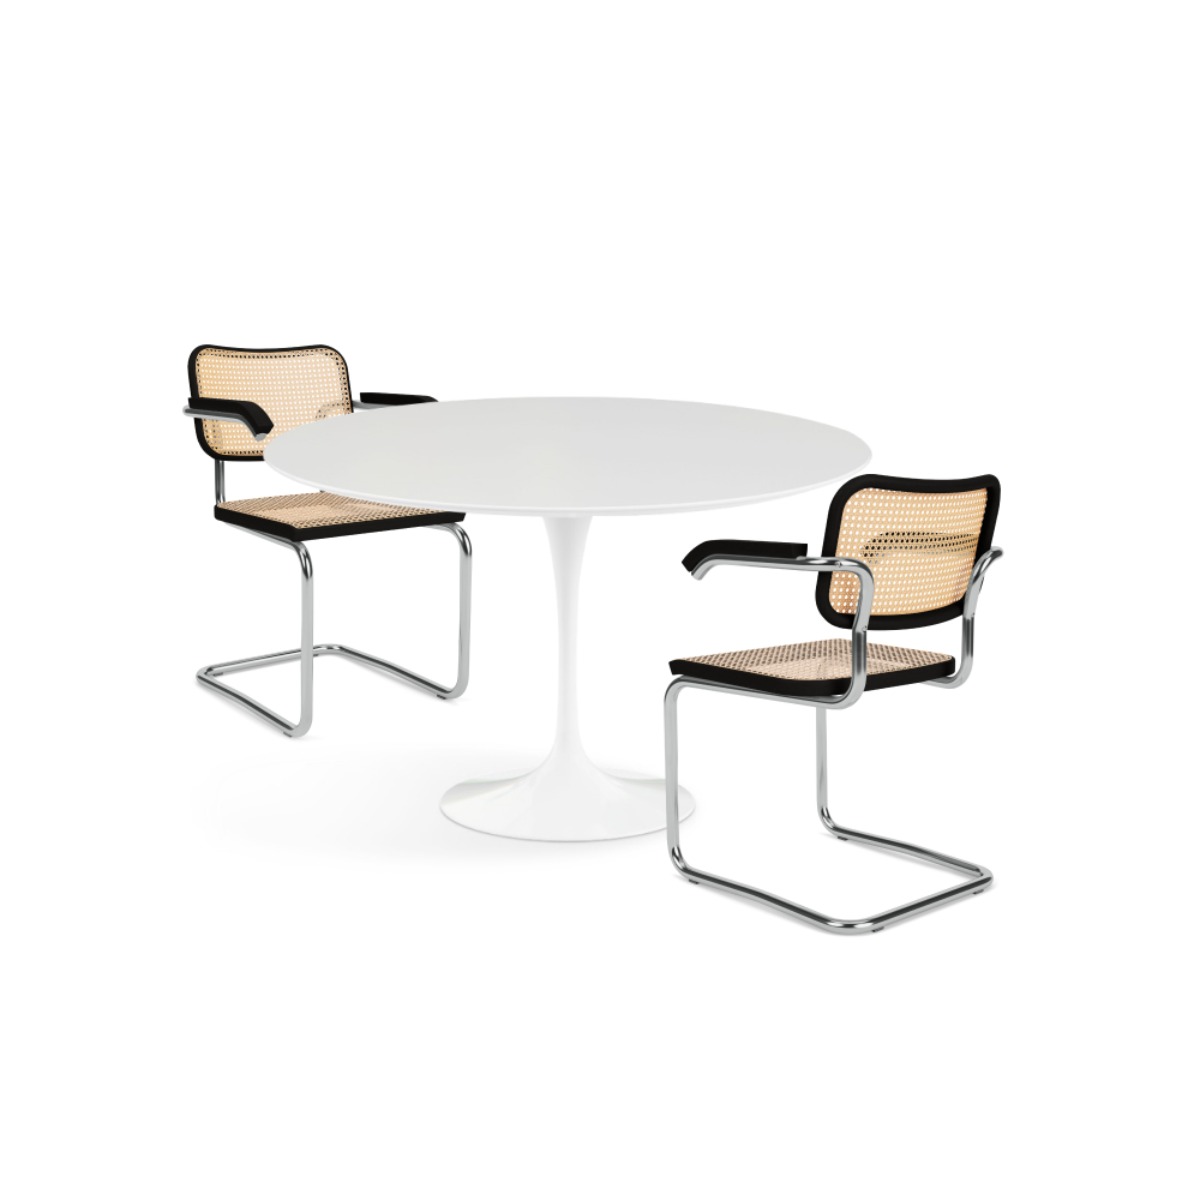 KNOLL [PROMOTION 20%] Saarinen Dining Table(ø120) + Cesca Chair